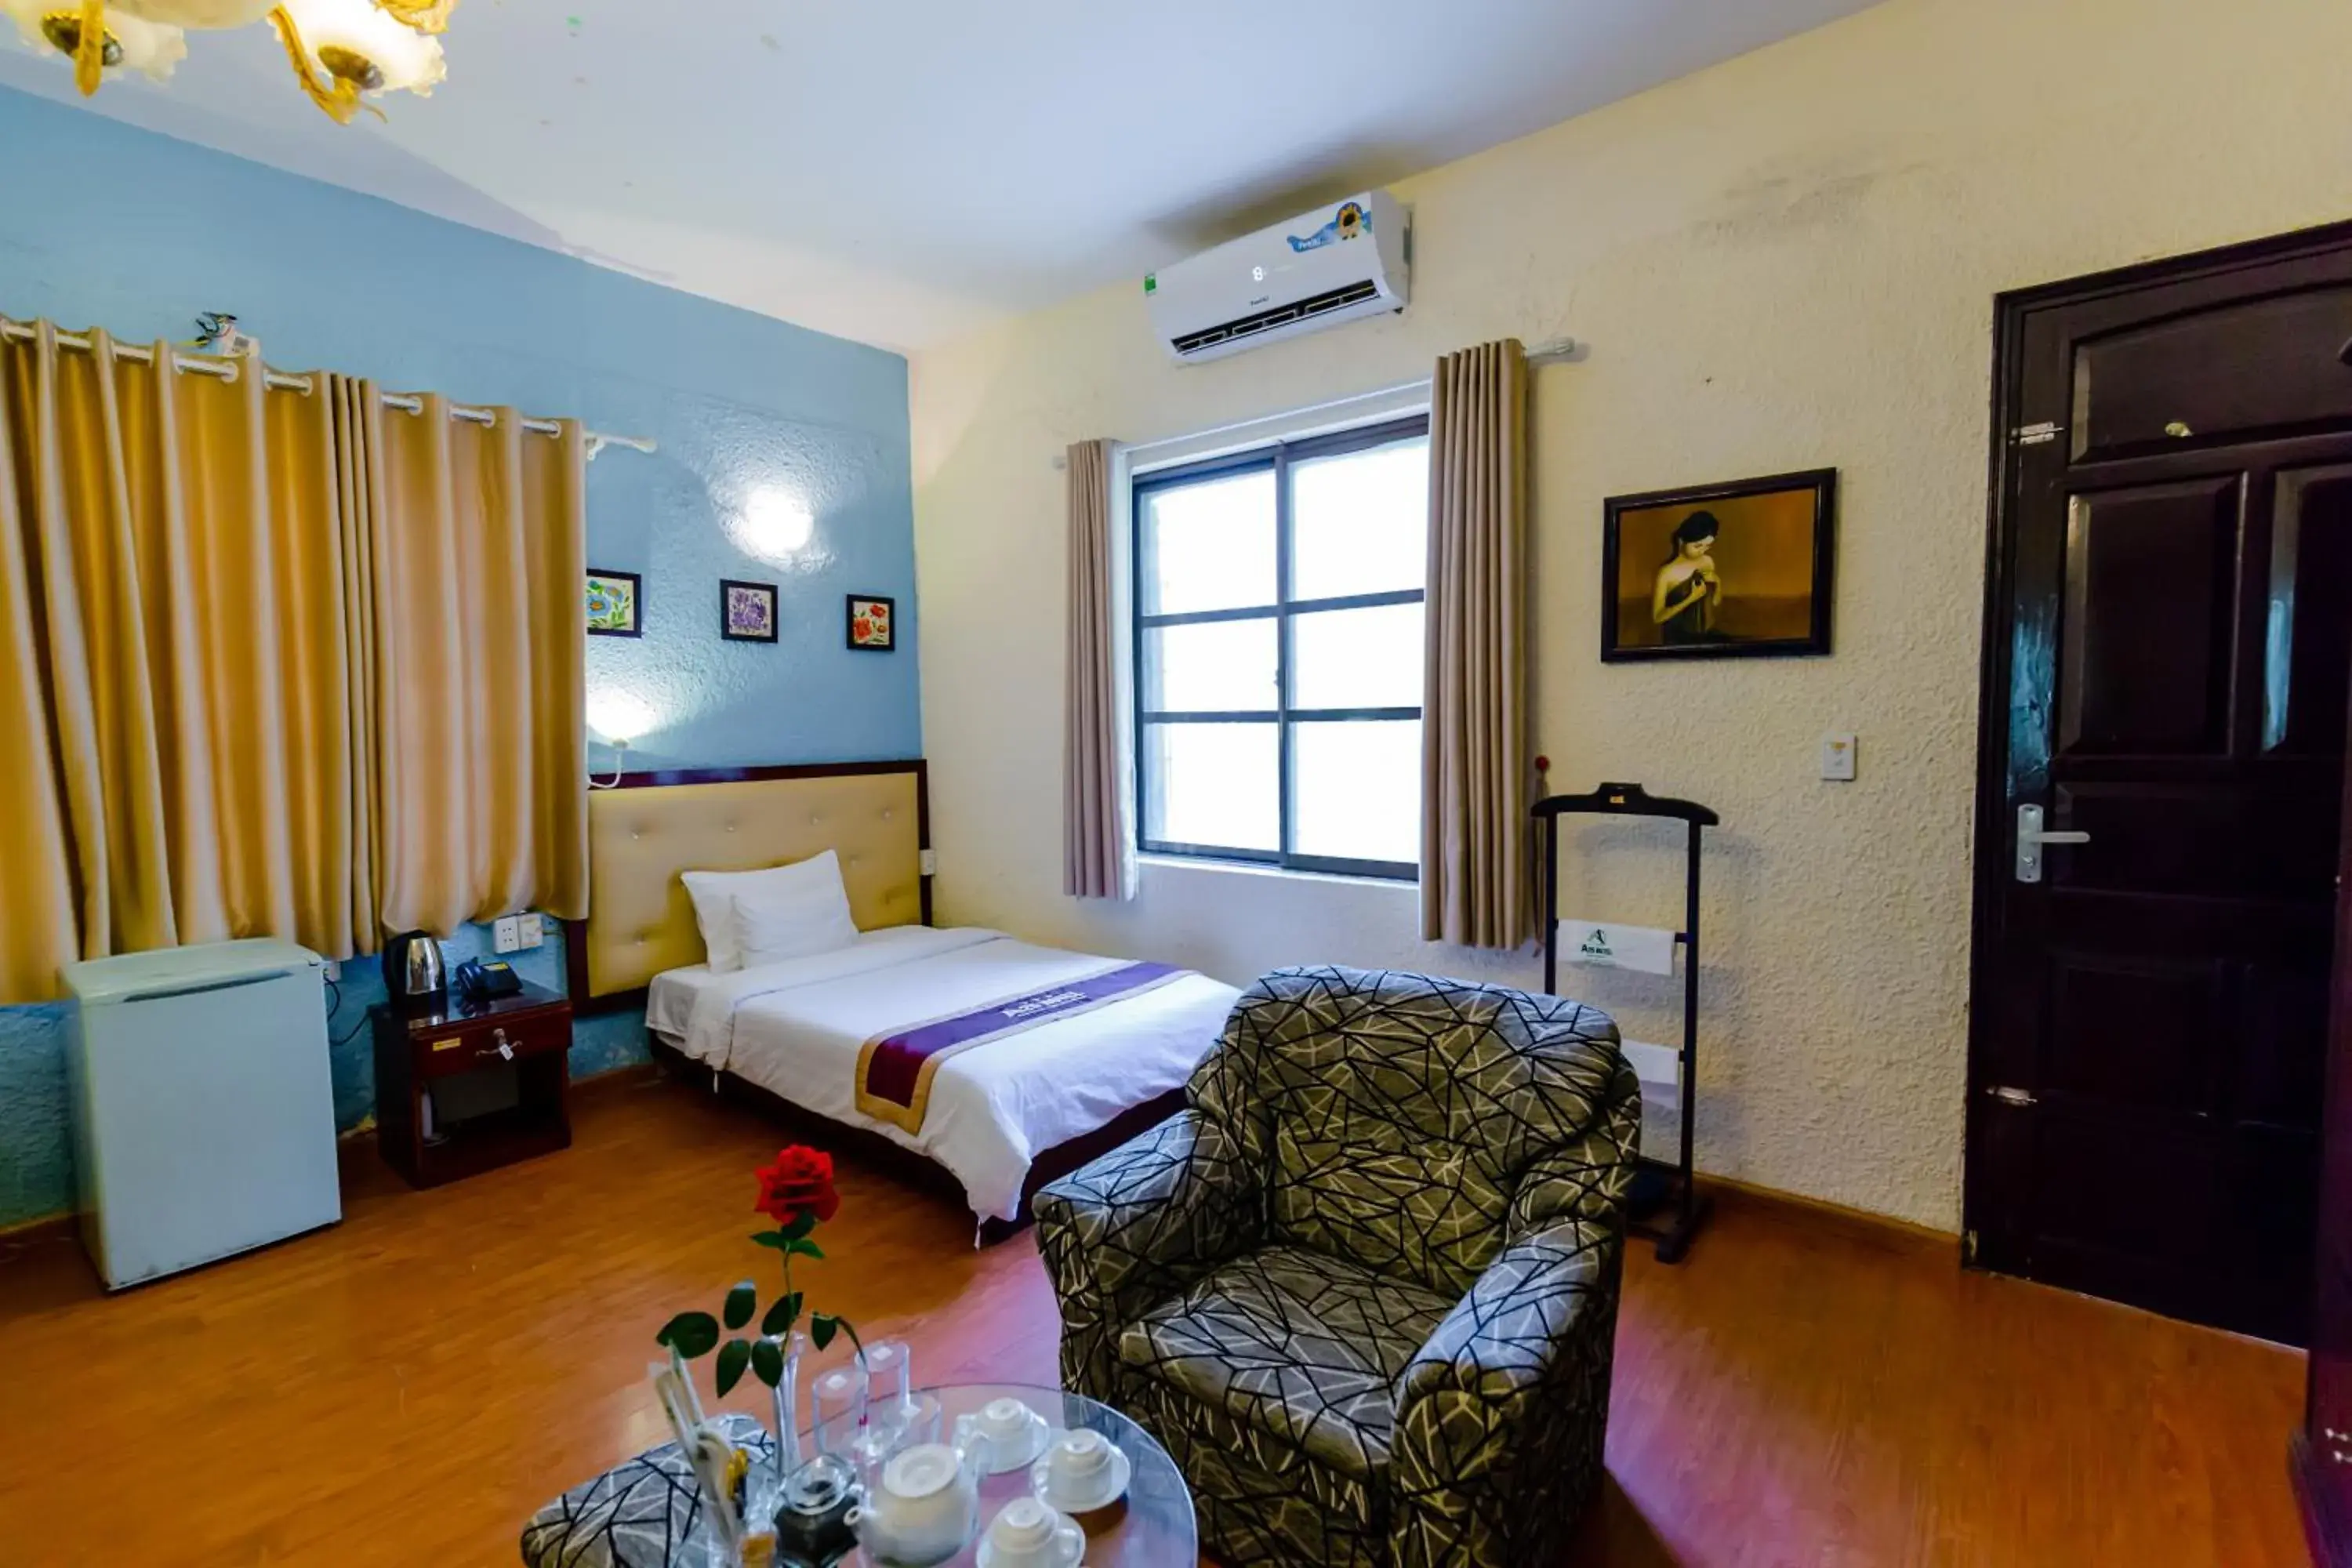 A25 Hotel - Hoàng Quốc Việt